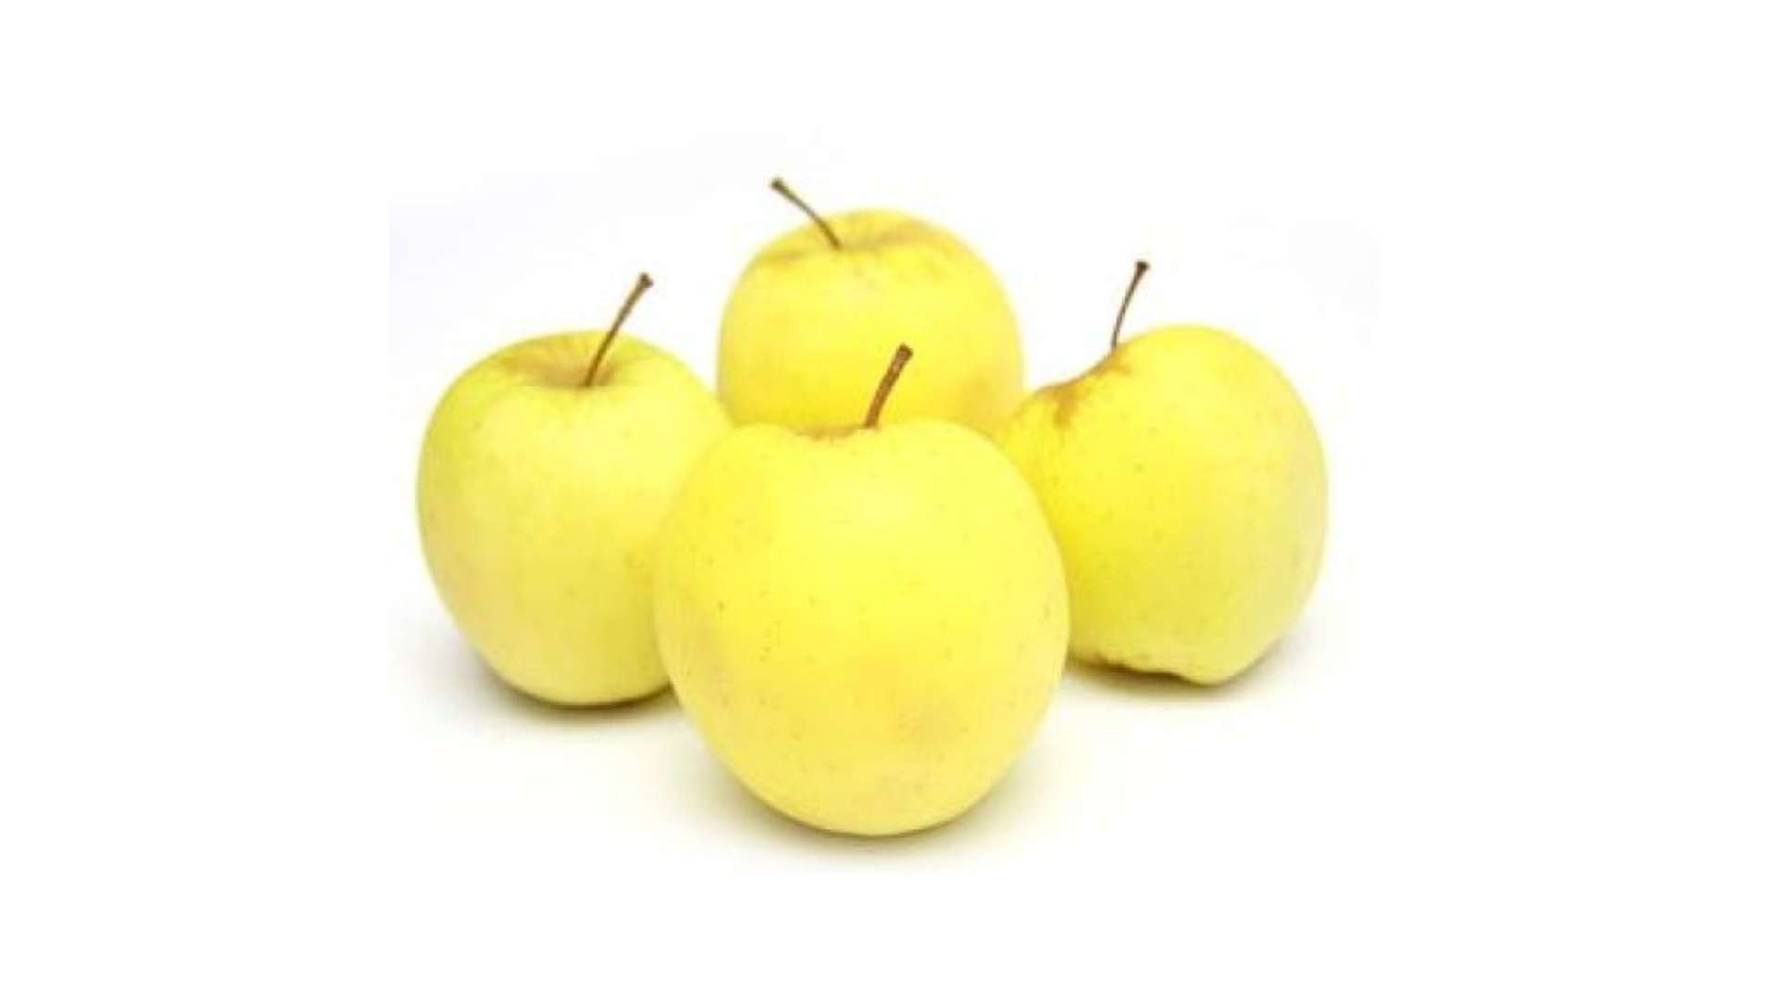 MONOP BIOLOGIQUE pomme jaune bio 4 fruits cat II barquette de 4 fruits